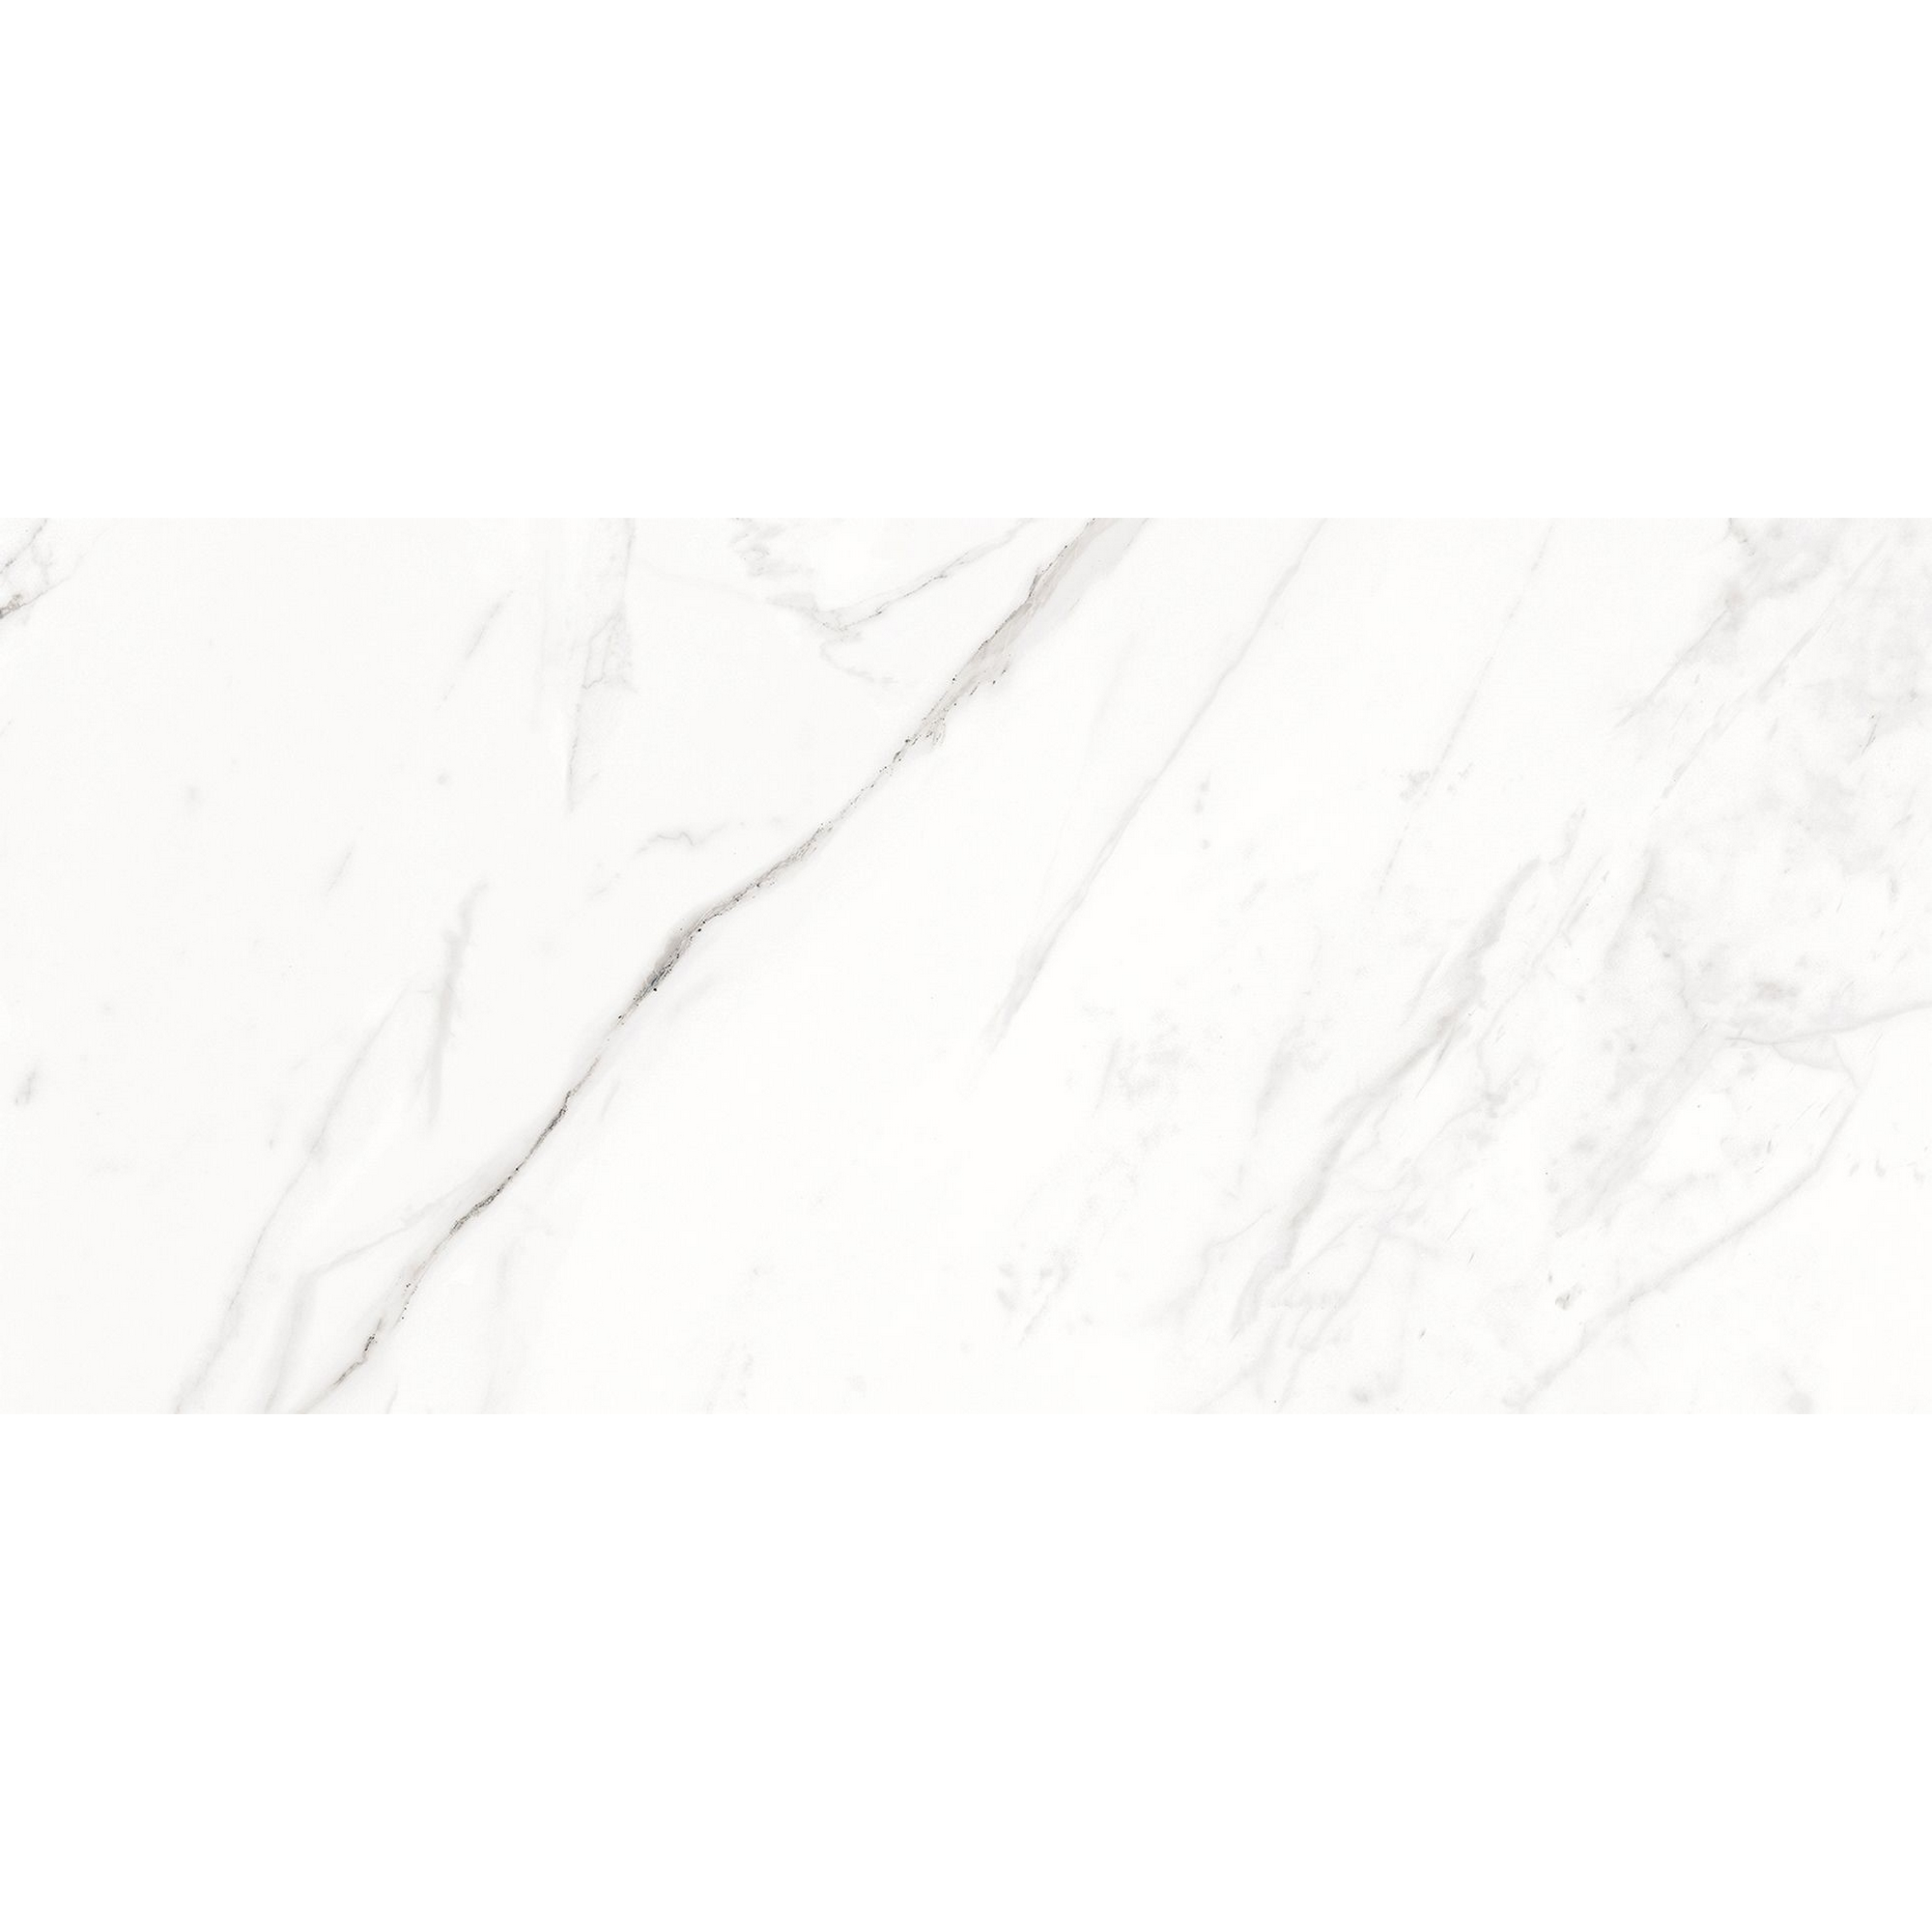 Bodenfliese 'Calacata' Feinsteinzeug weiß-grau 29,8 x 60 cm + product picture